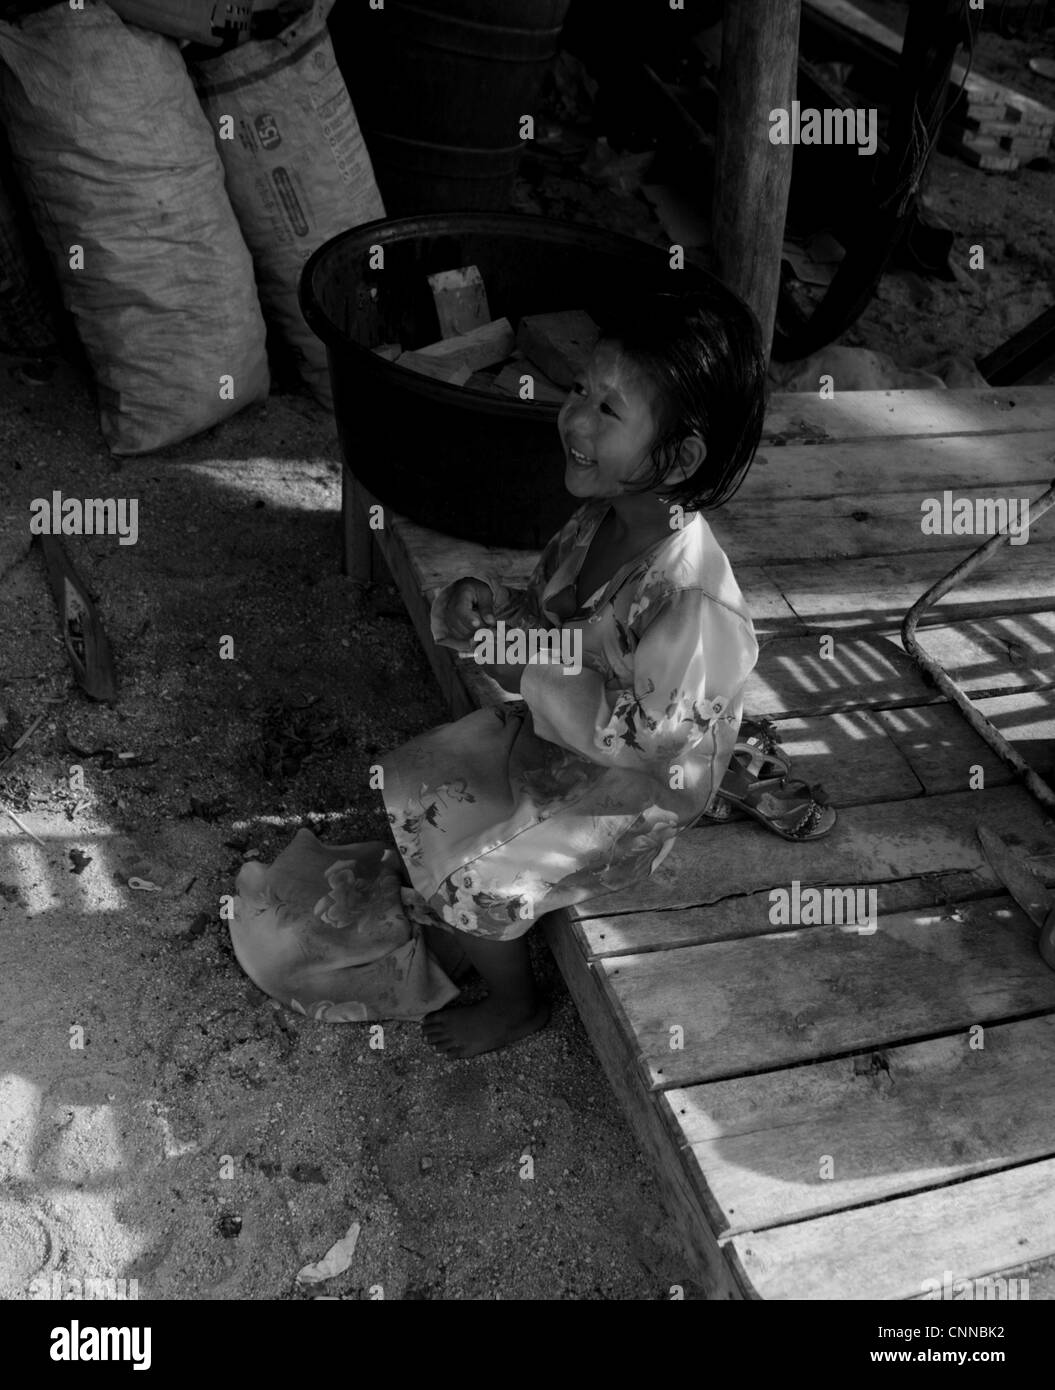 Jeune fille thaïe, communauté de pêcheurs, Koh Samui, Thaïlande Banque D'Images